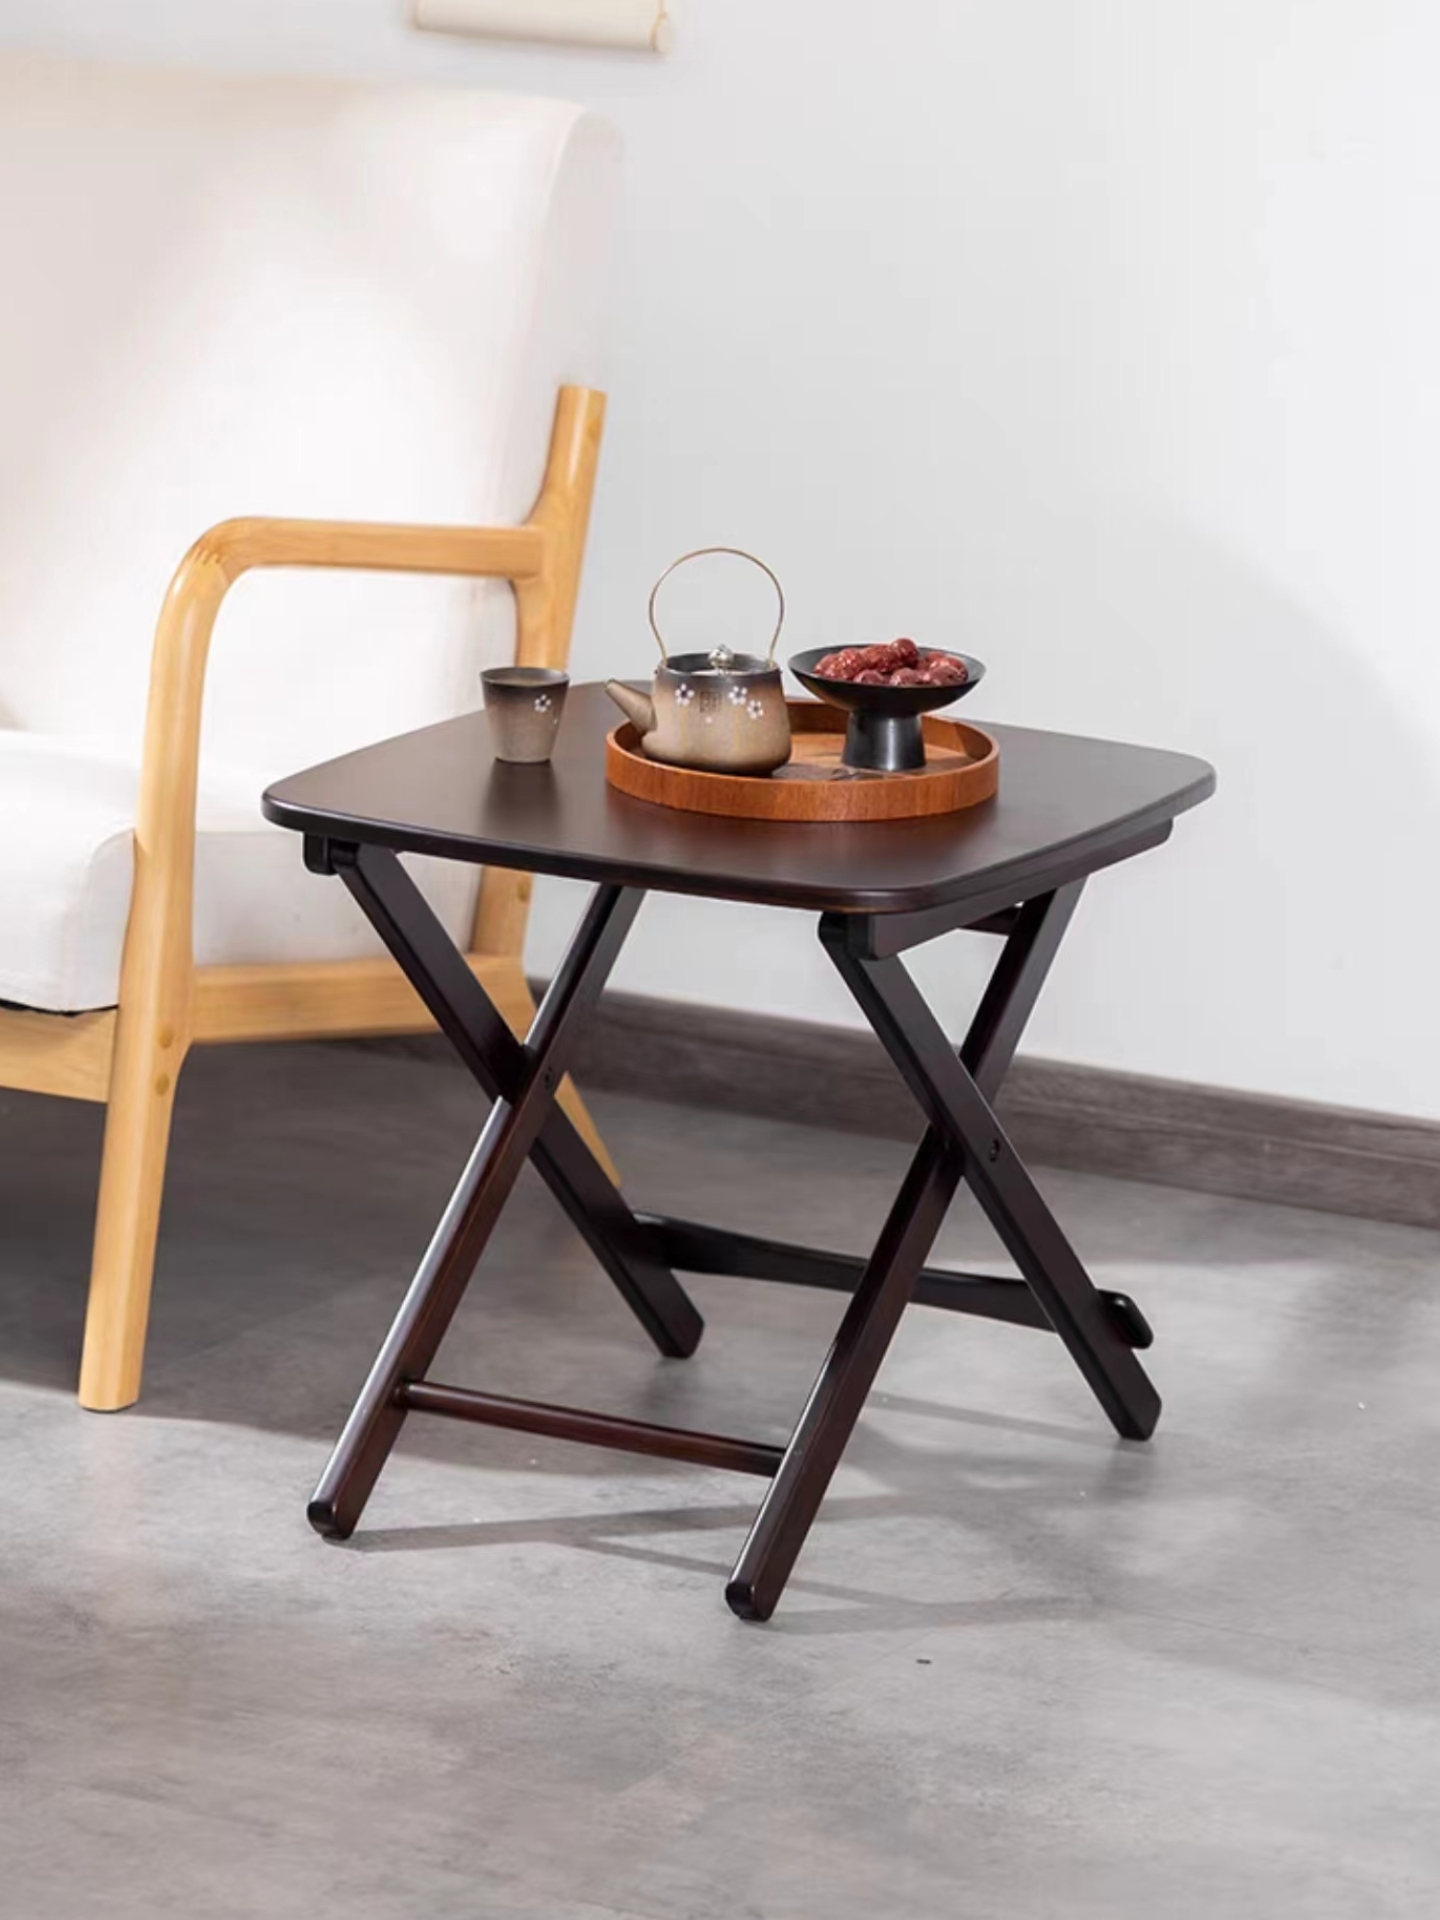 折叠小桌子简约方桌户外露营便携式茶几实木阳台休闲网红野餐桌椅